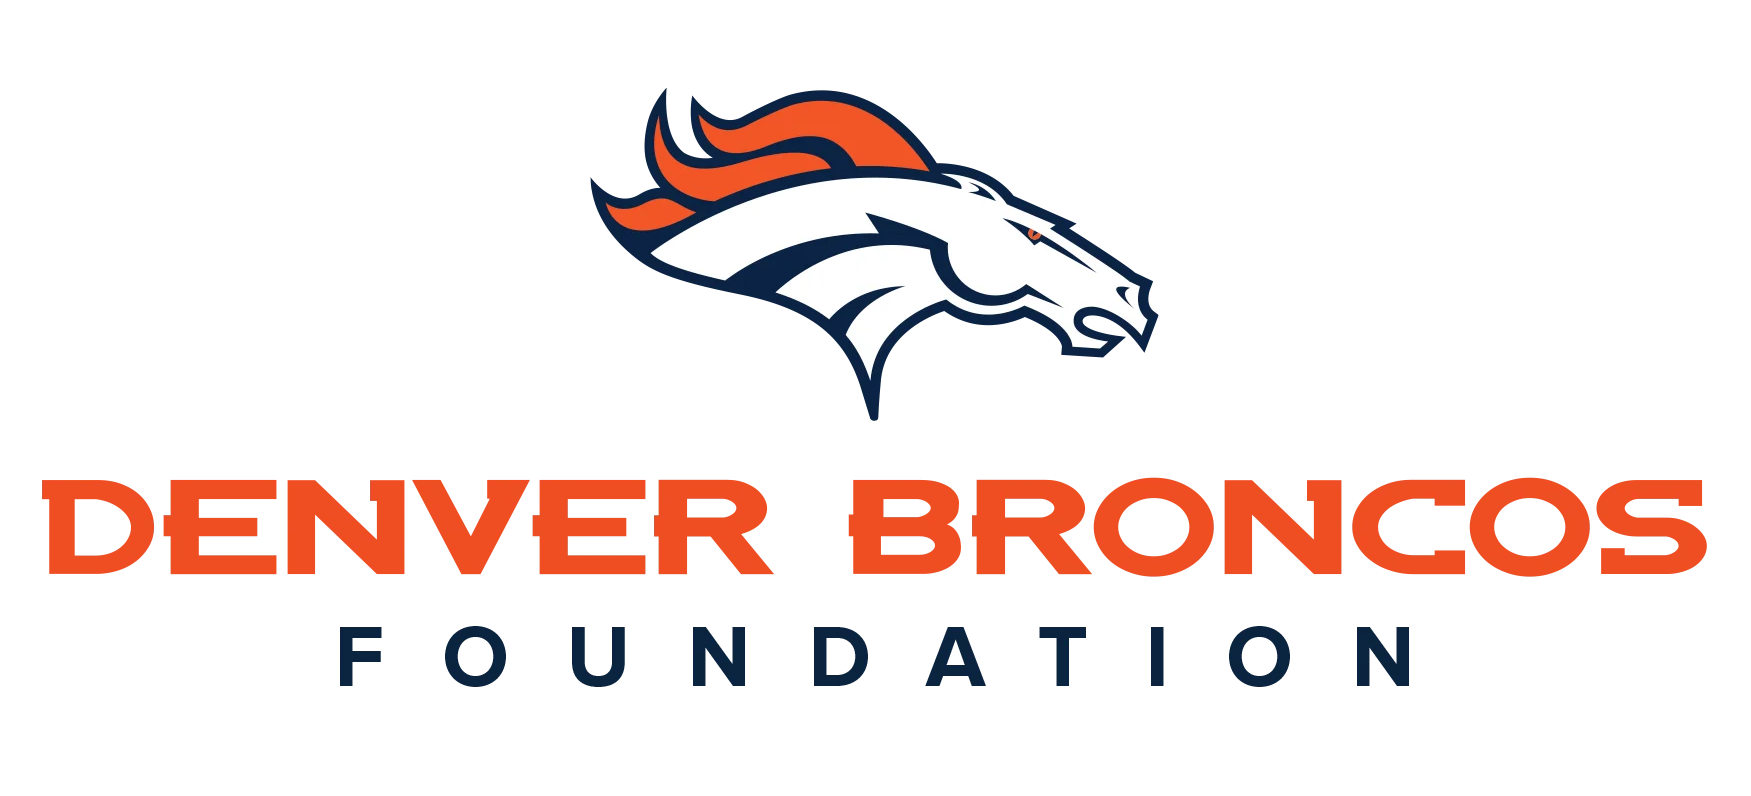 Denver Broncos Foundation logo